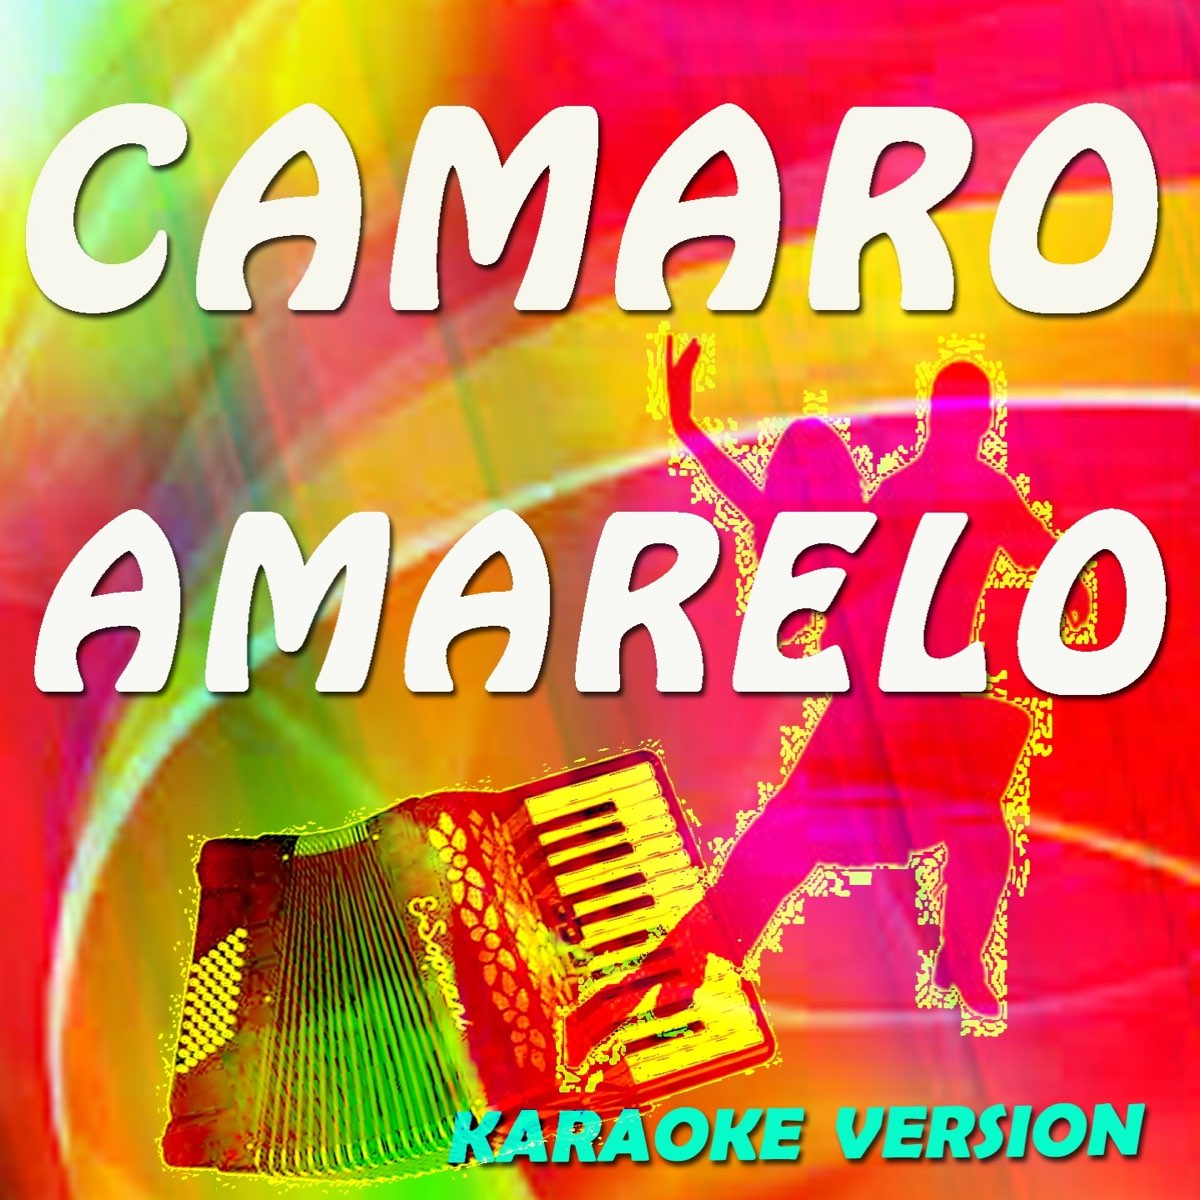 Camaro Amarelo (Karaoke Version Originally Perfomed By Munhoz & Mariano) -  Single de Manuel & Miguel en Apple Music